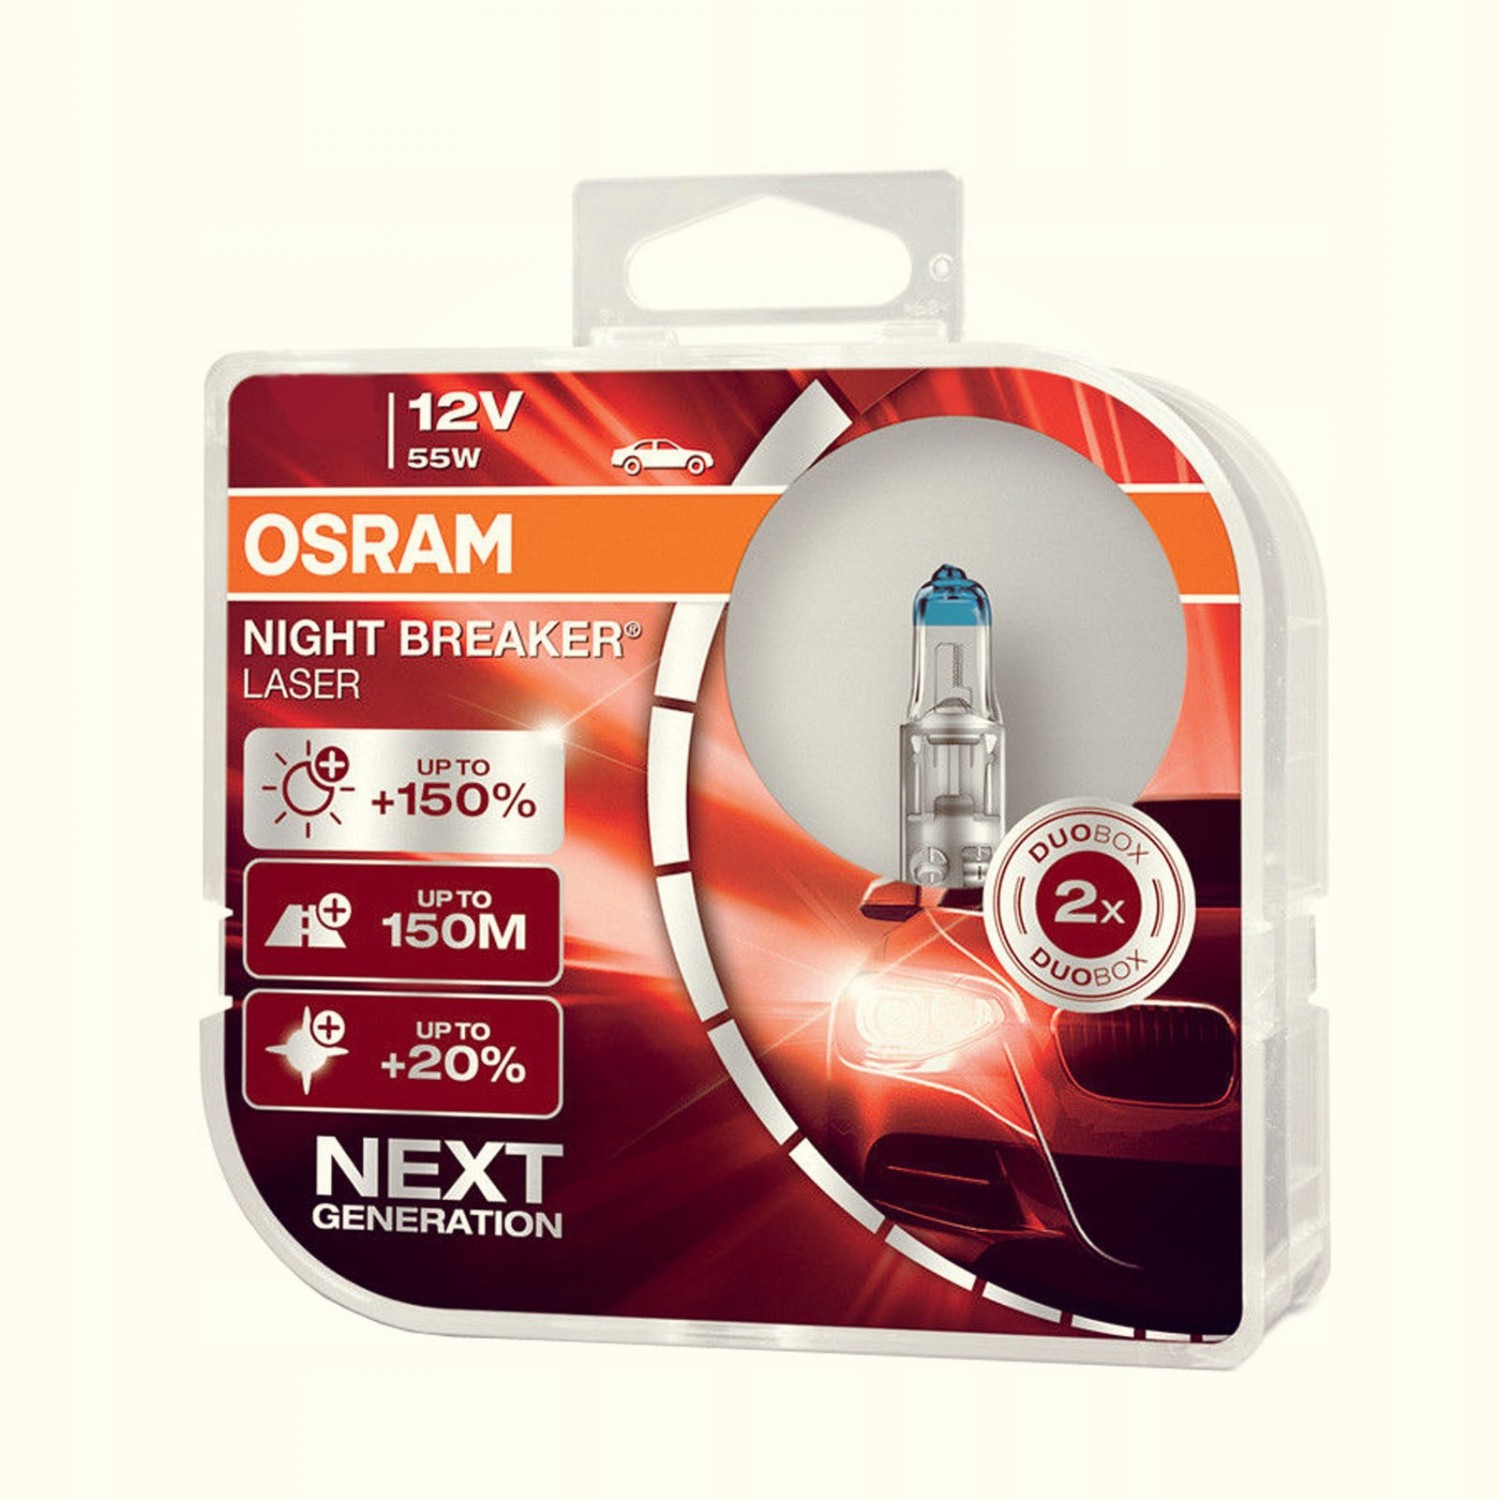 OSRAM NIGHT BREAKER LASER +150% 